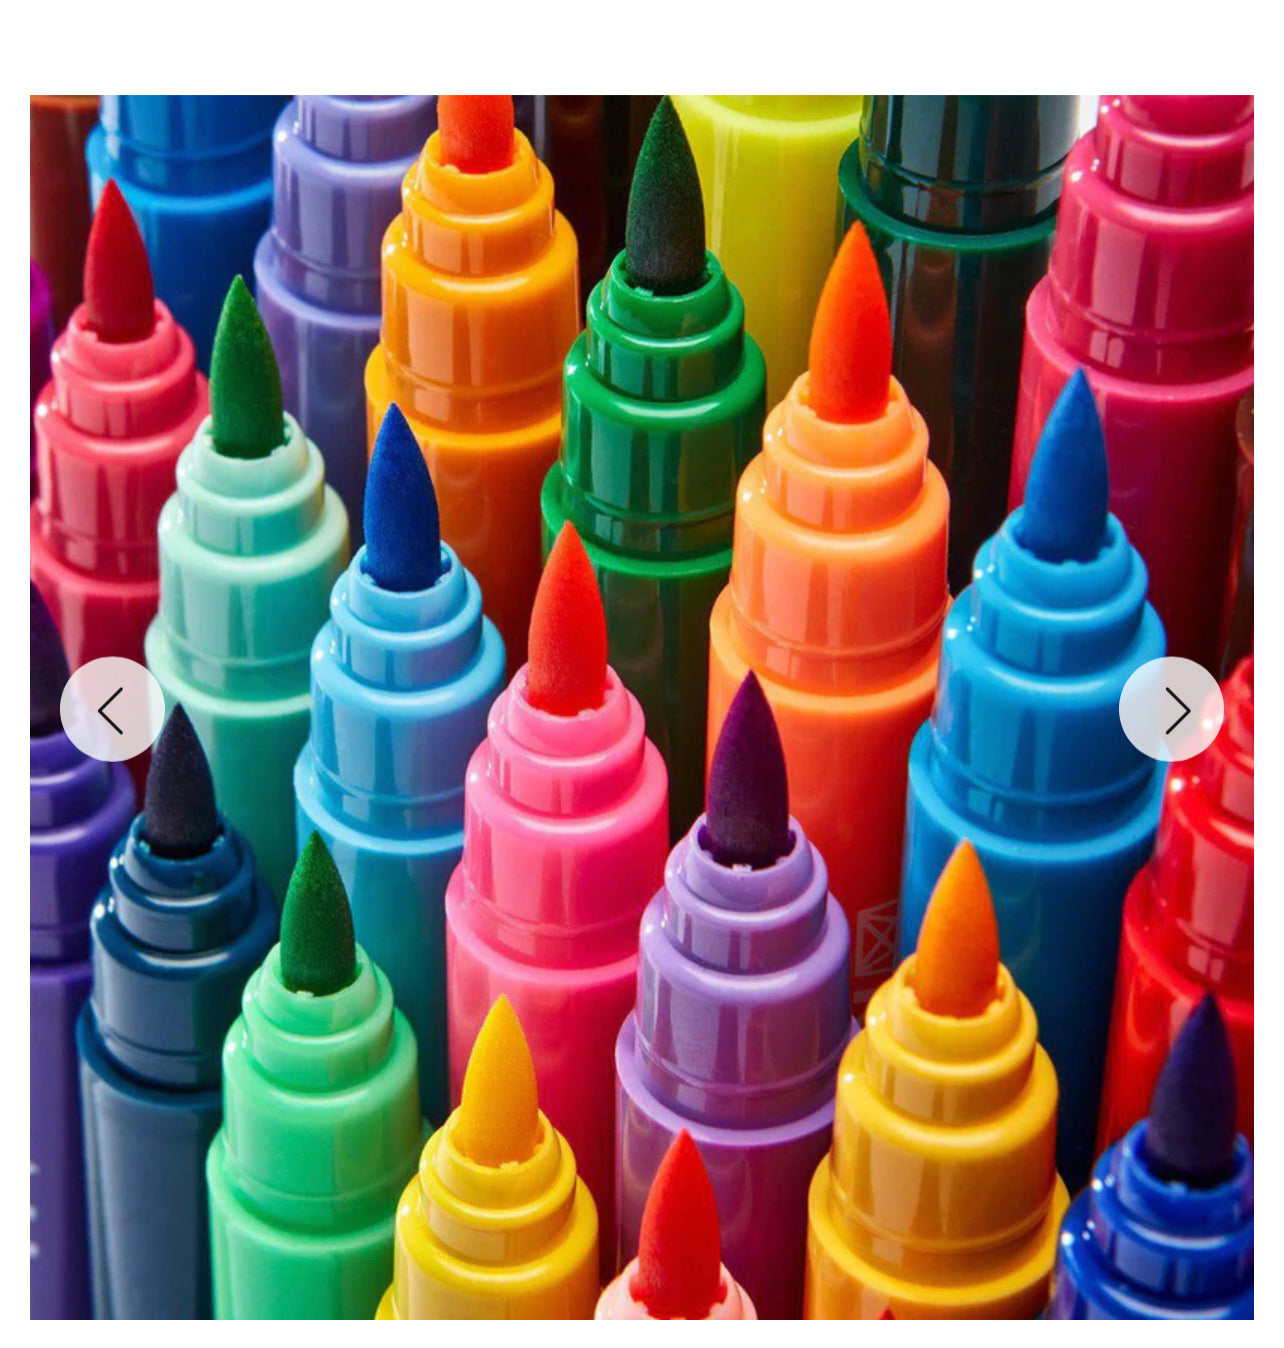 New KingArt Studio Tip Watercolor Brush Markers, Set of 36 Vivid Colors